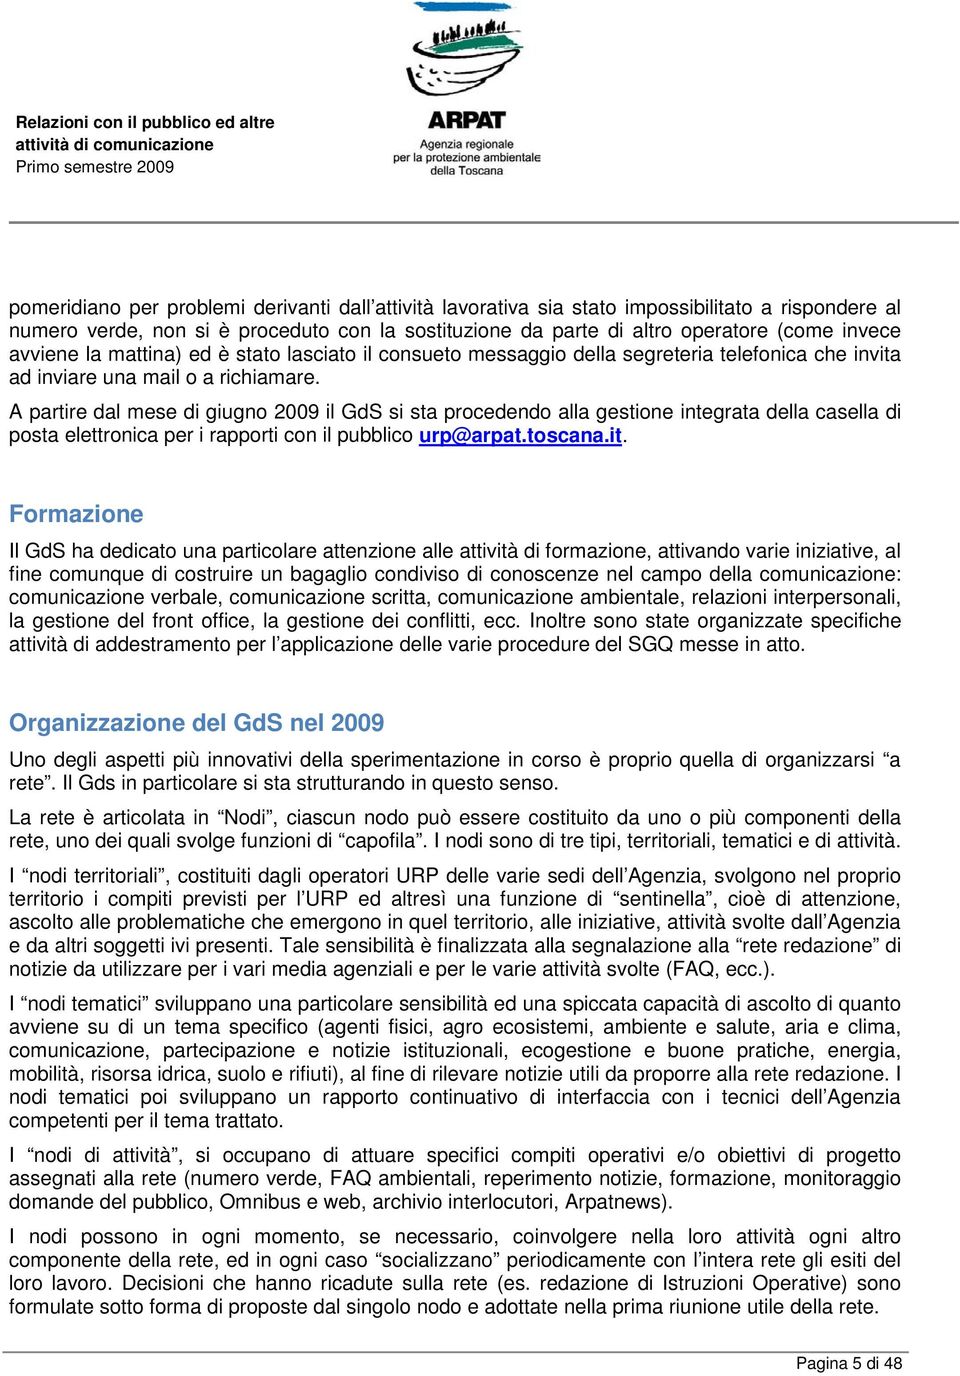 A partire dal mese di giugno 2009 il GdS si sta procedendo alla gestione integrata della casella di posta elettronica per i rapporti con il pubblico urp@arpat.toscana.it.